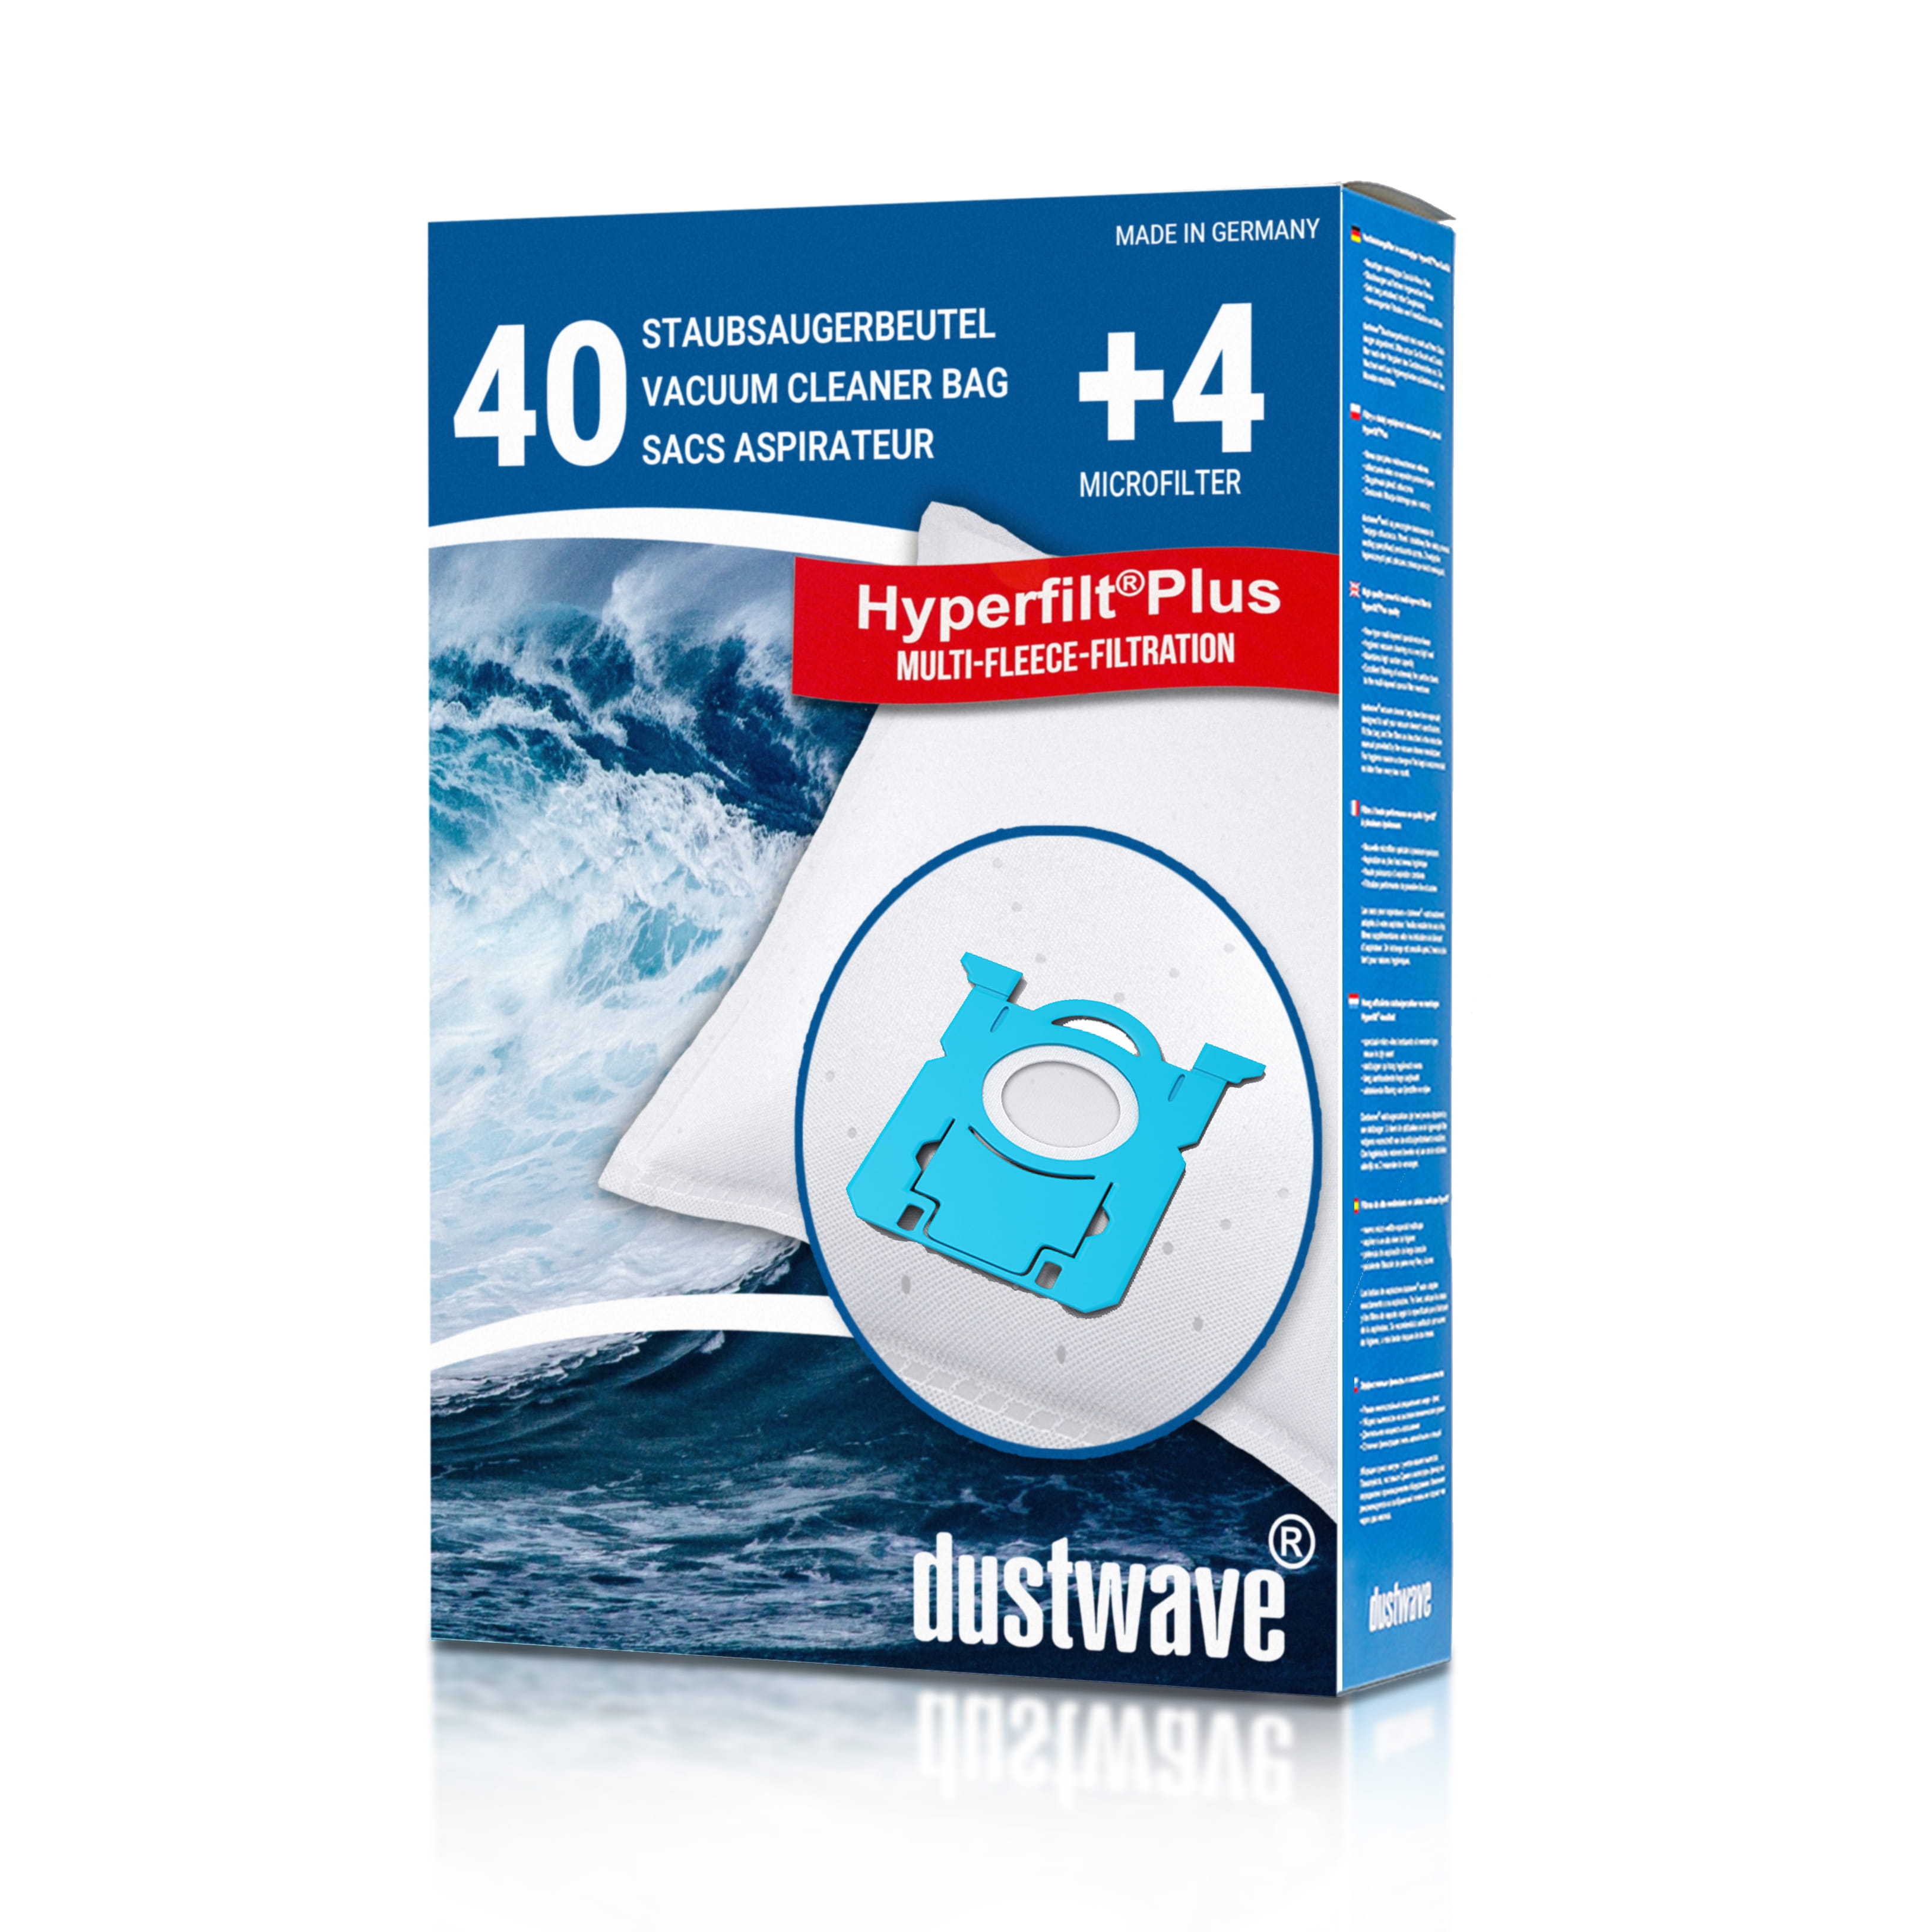 Dustwave® 40 Staubsaugerbeutel für AEG VX8-2-BM-M - hocheffizient, mehrlagiges Mikrovlies mit Hygieneverschluss - Made in Germany